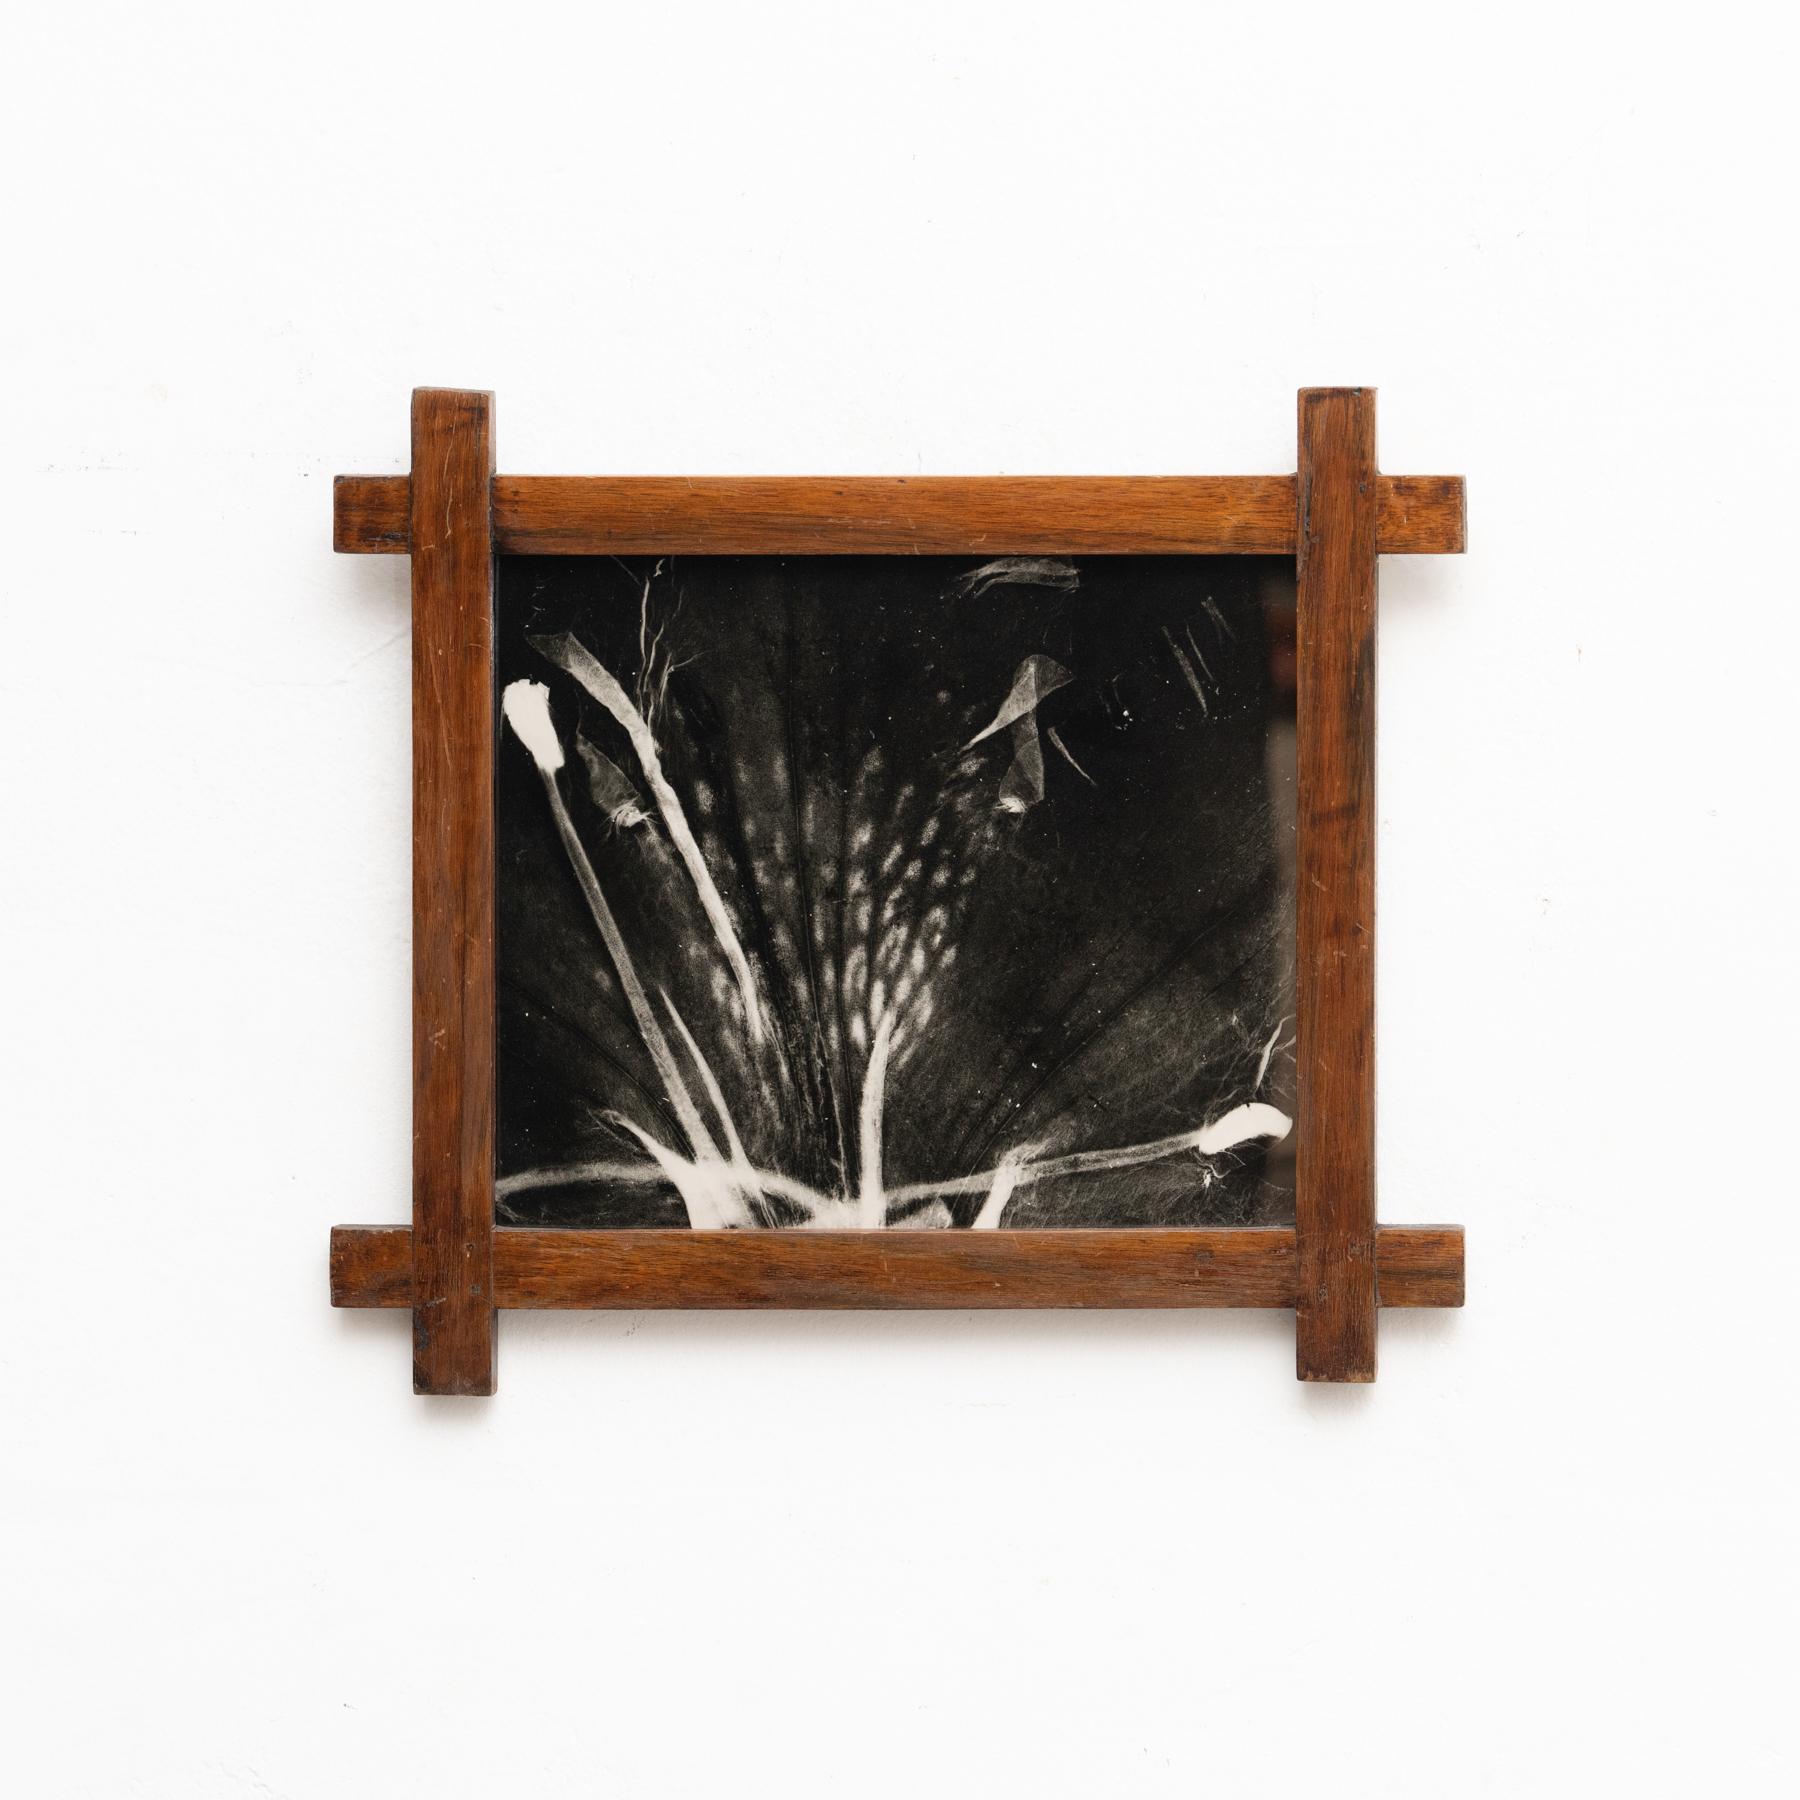 Fotogramm des Künstlers Enrico Garzaro aus der Serie Flora, 2015.

Gelatinesilberpapier.

Gerahmt.

In gutem Originalzustand mit geringen alters- und gebrauchsbedingten Abnutzungserscheinungen, die eine schöne Patina erhalten haben.